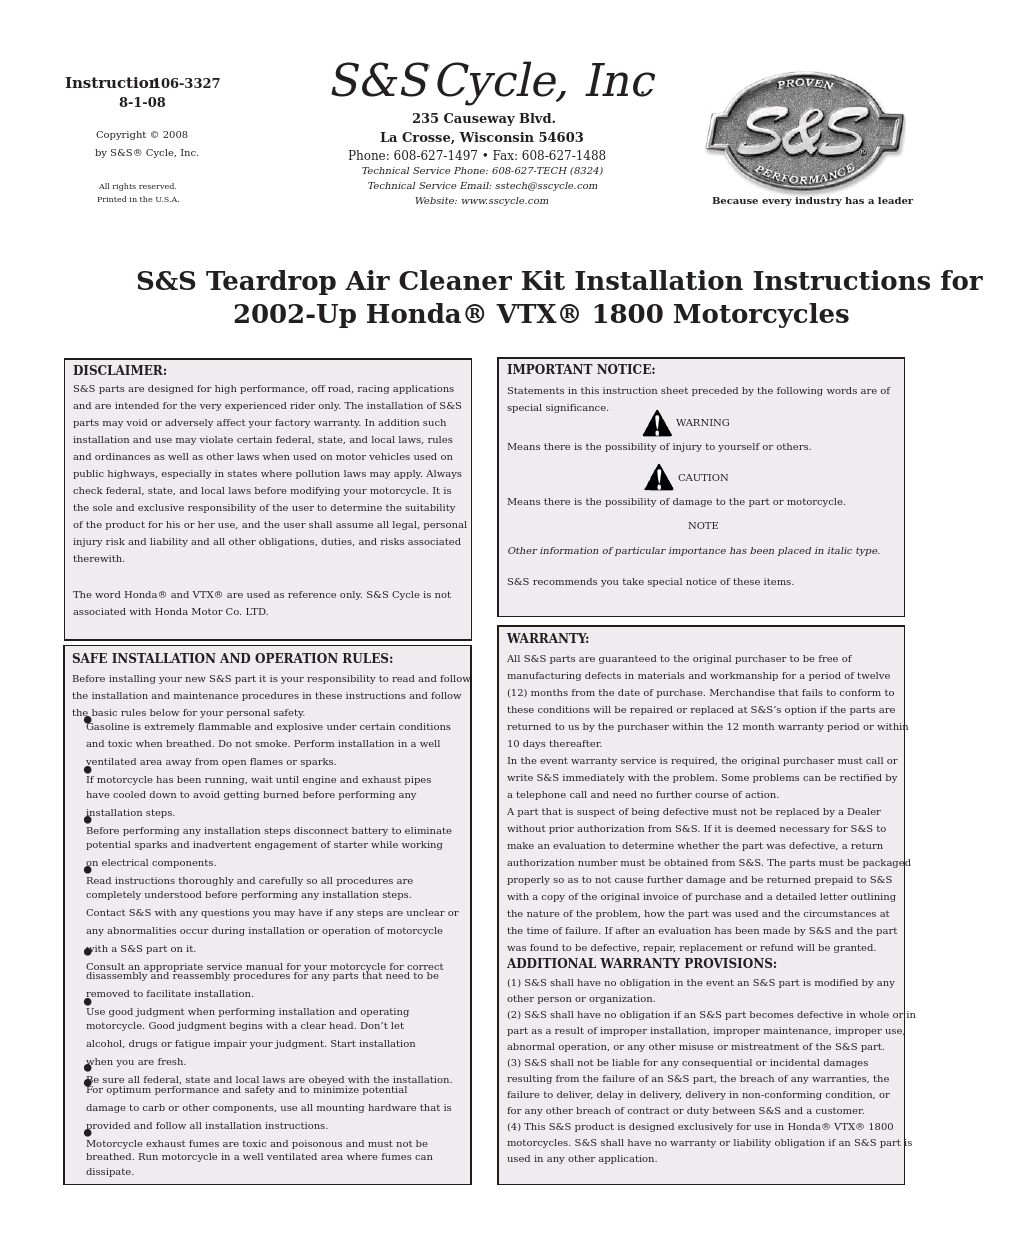 Teardrop Air Cleaner Kit for 2002-Up Honda VTX 1800 Motorcycles